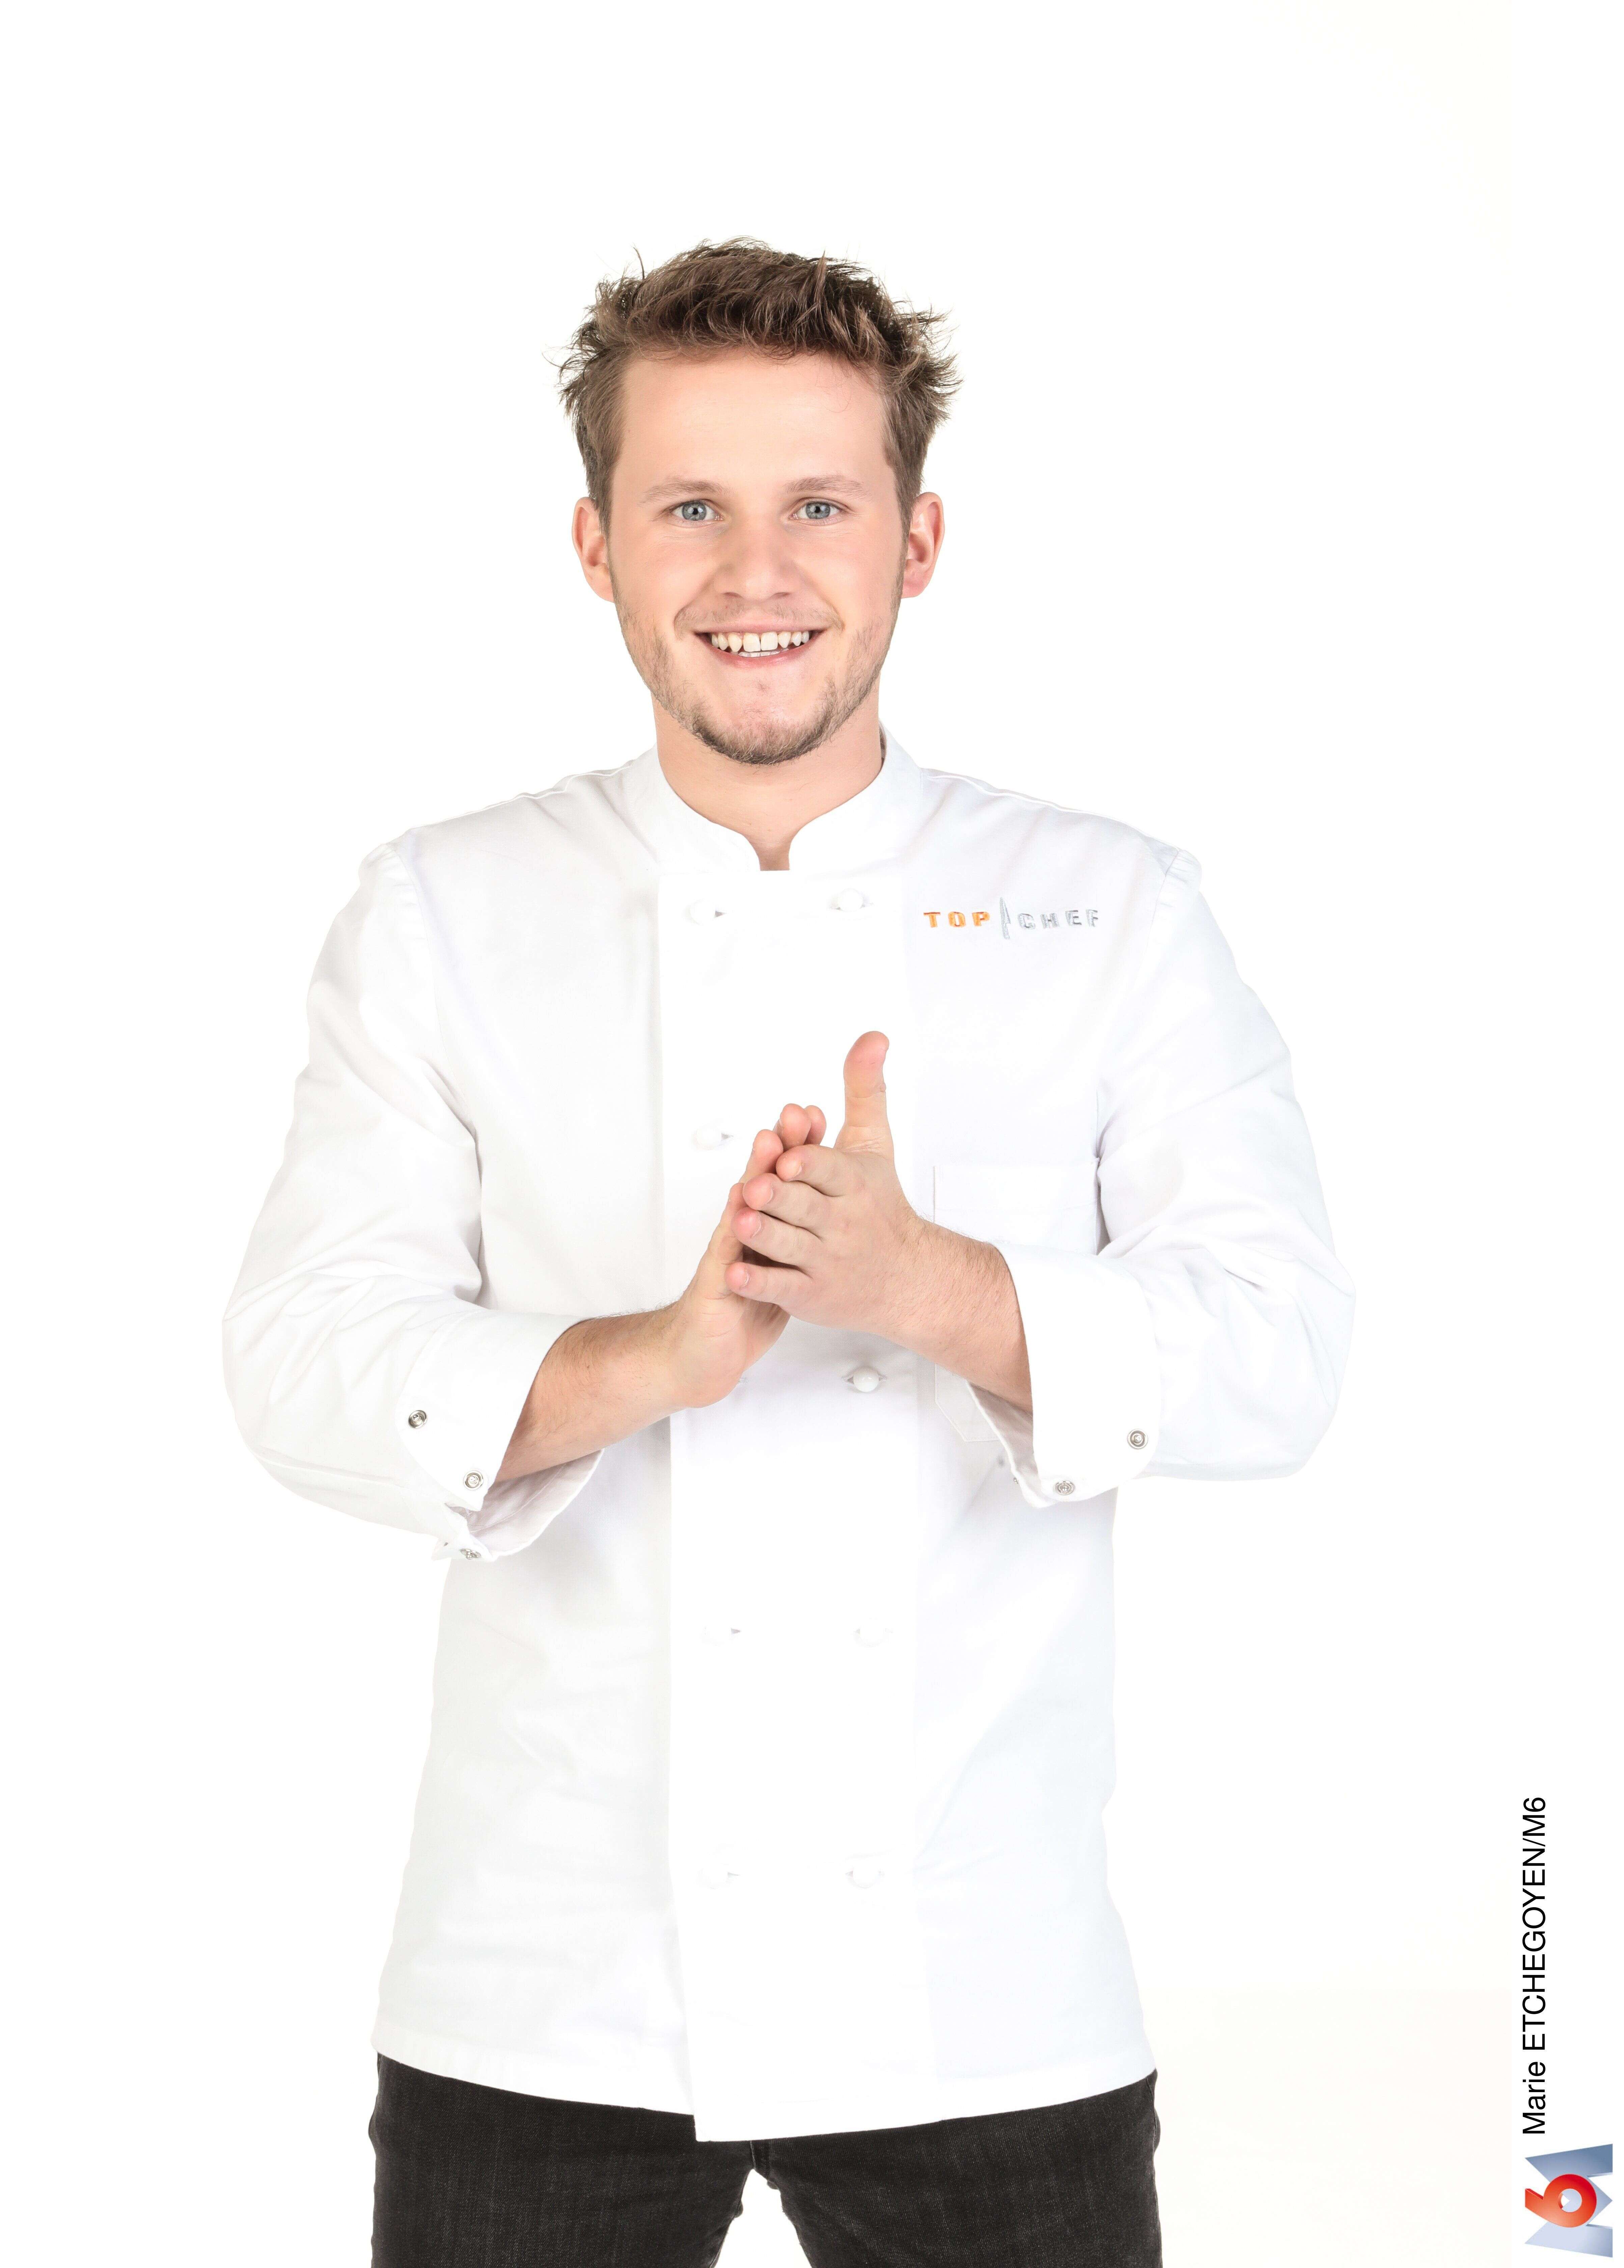 Mathieu Vande Velde, le candidat éliminé de la compétition de “Top Chef” réagit